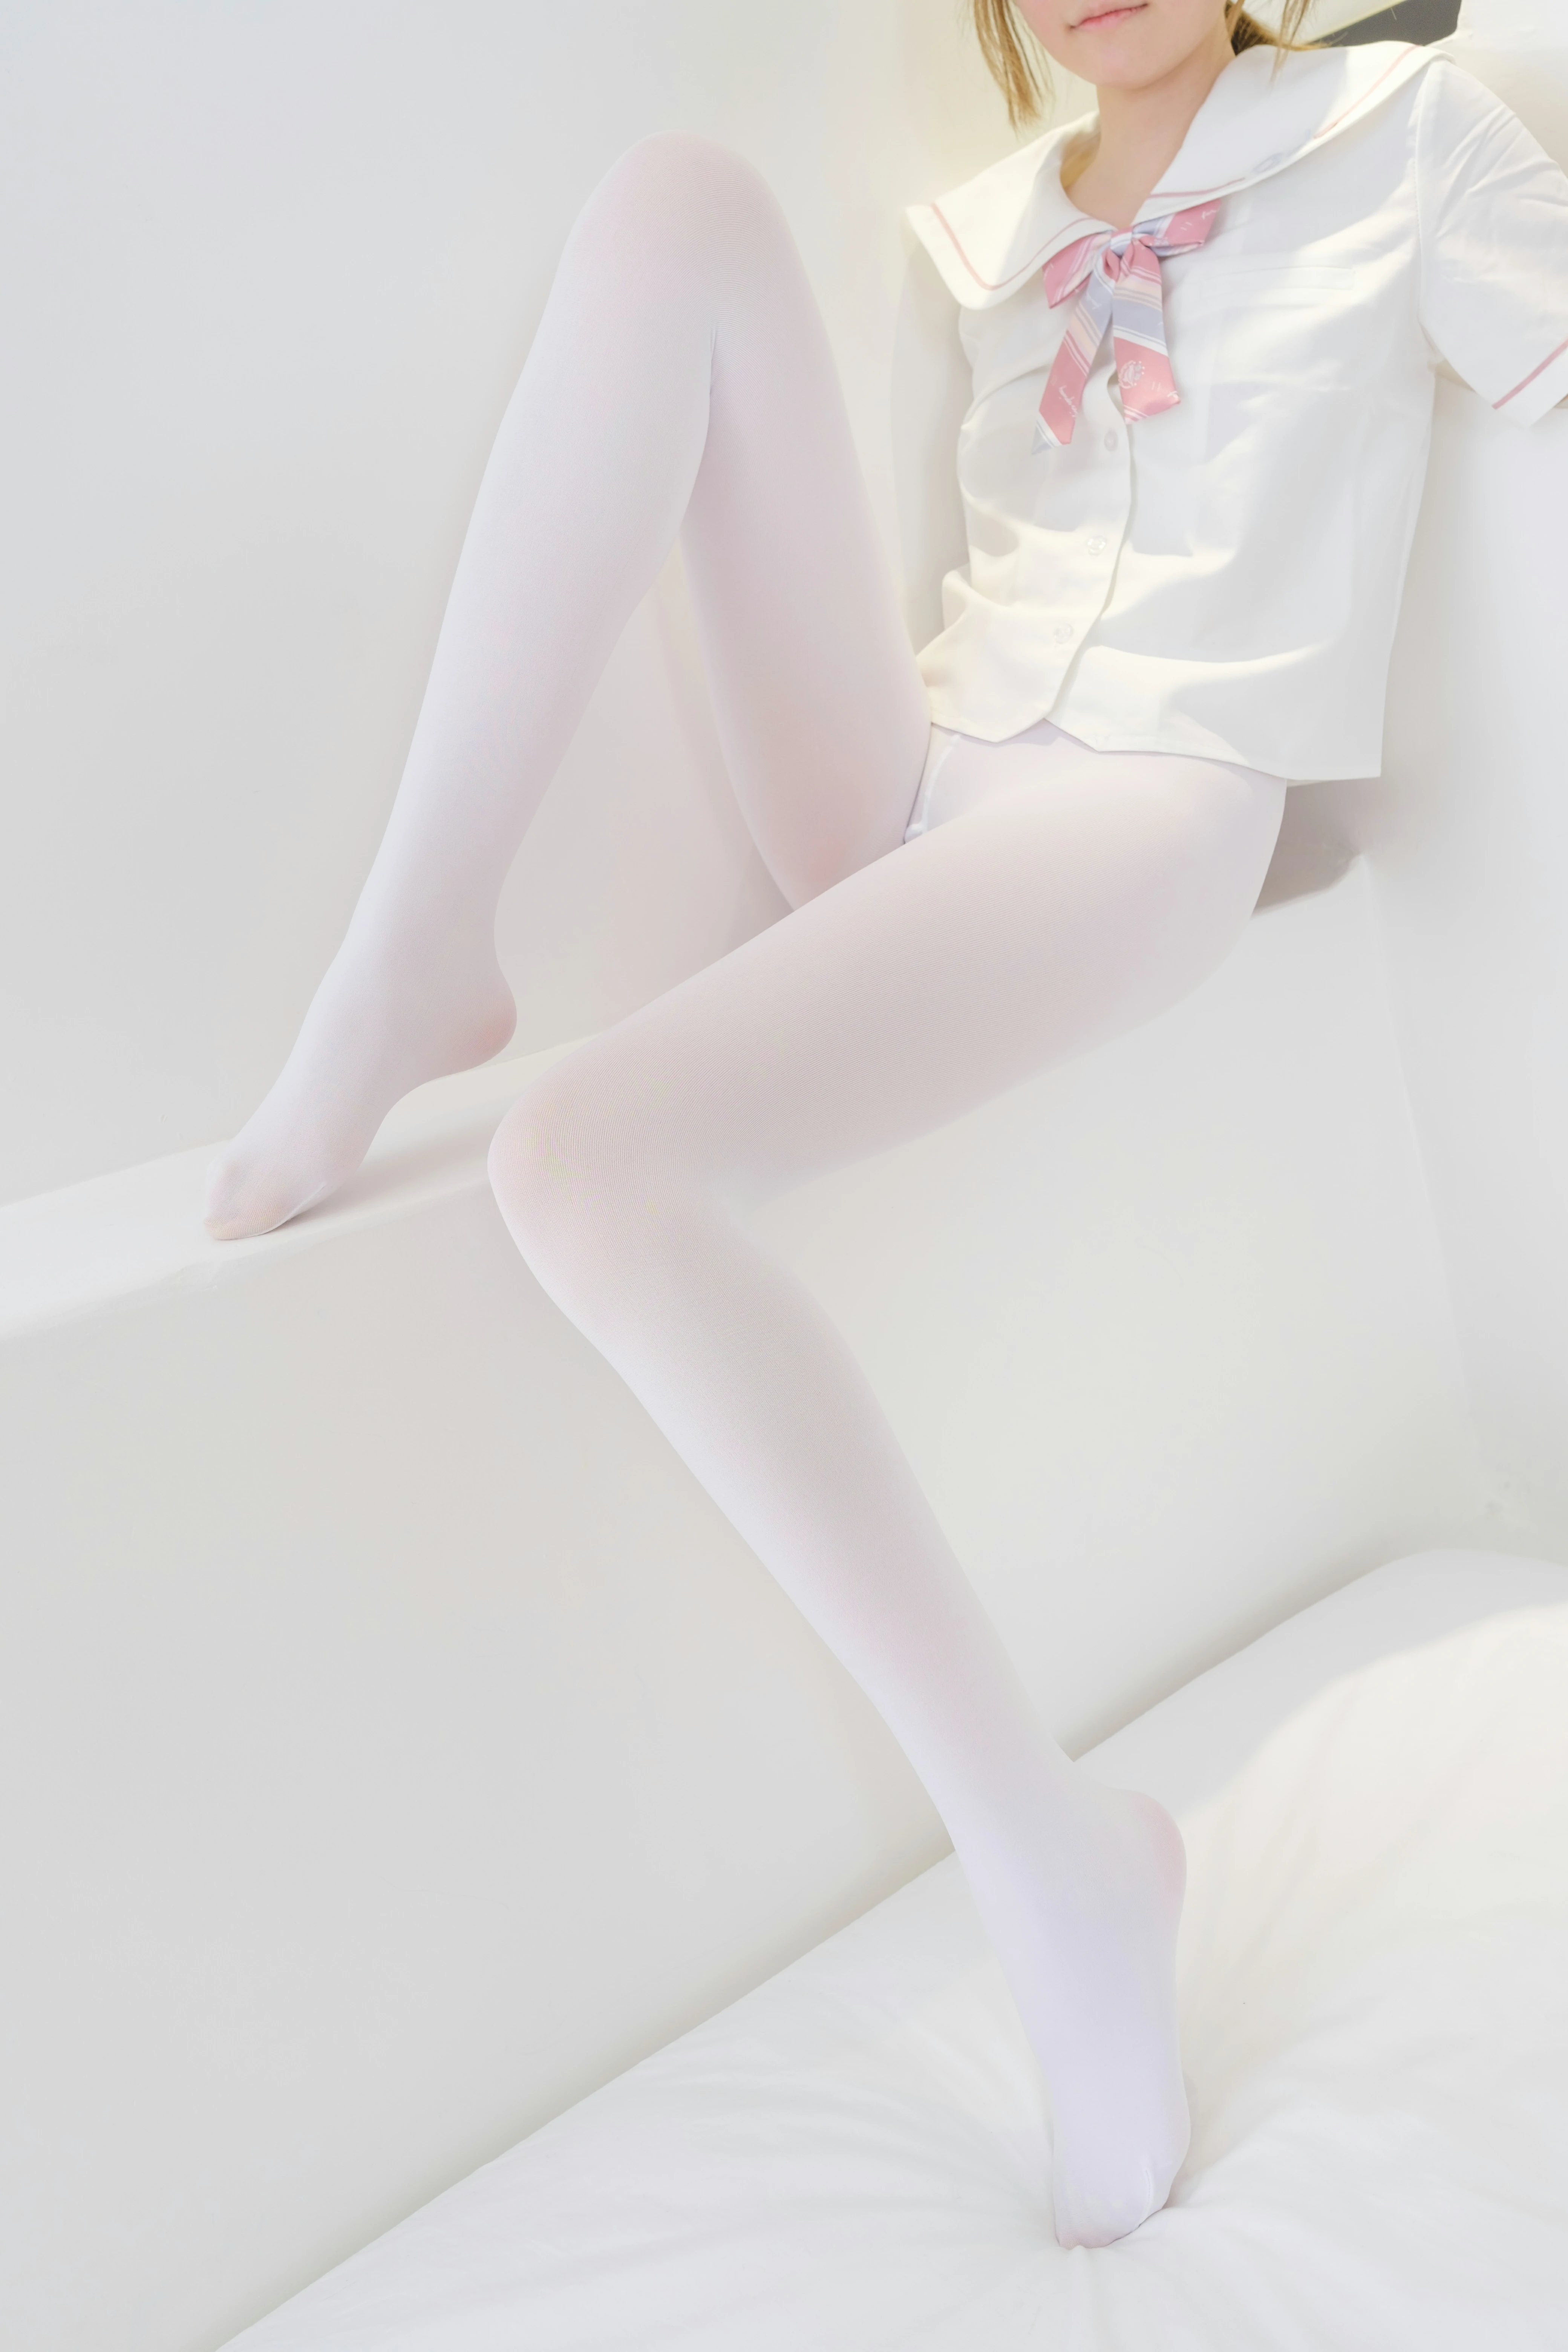 [森萝财团]GZAY3 酒店JK制服小萝莉 白色衬衫与粉色短裙加白色丝袜美腿性感私房写真集,0090